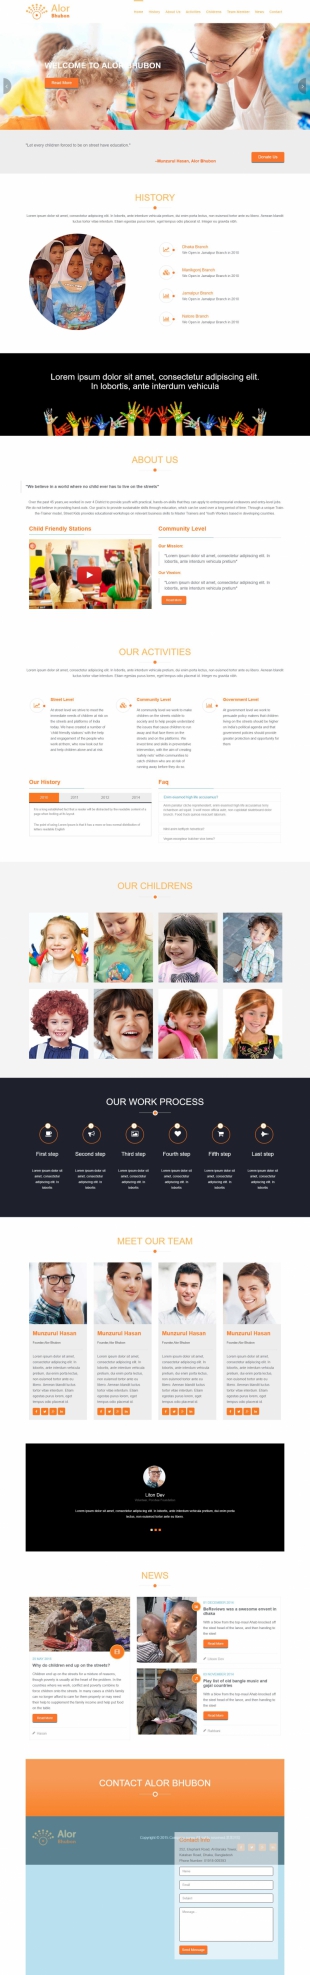 儿童教育类英文模板网站建设响应式网站电脑图片